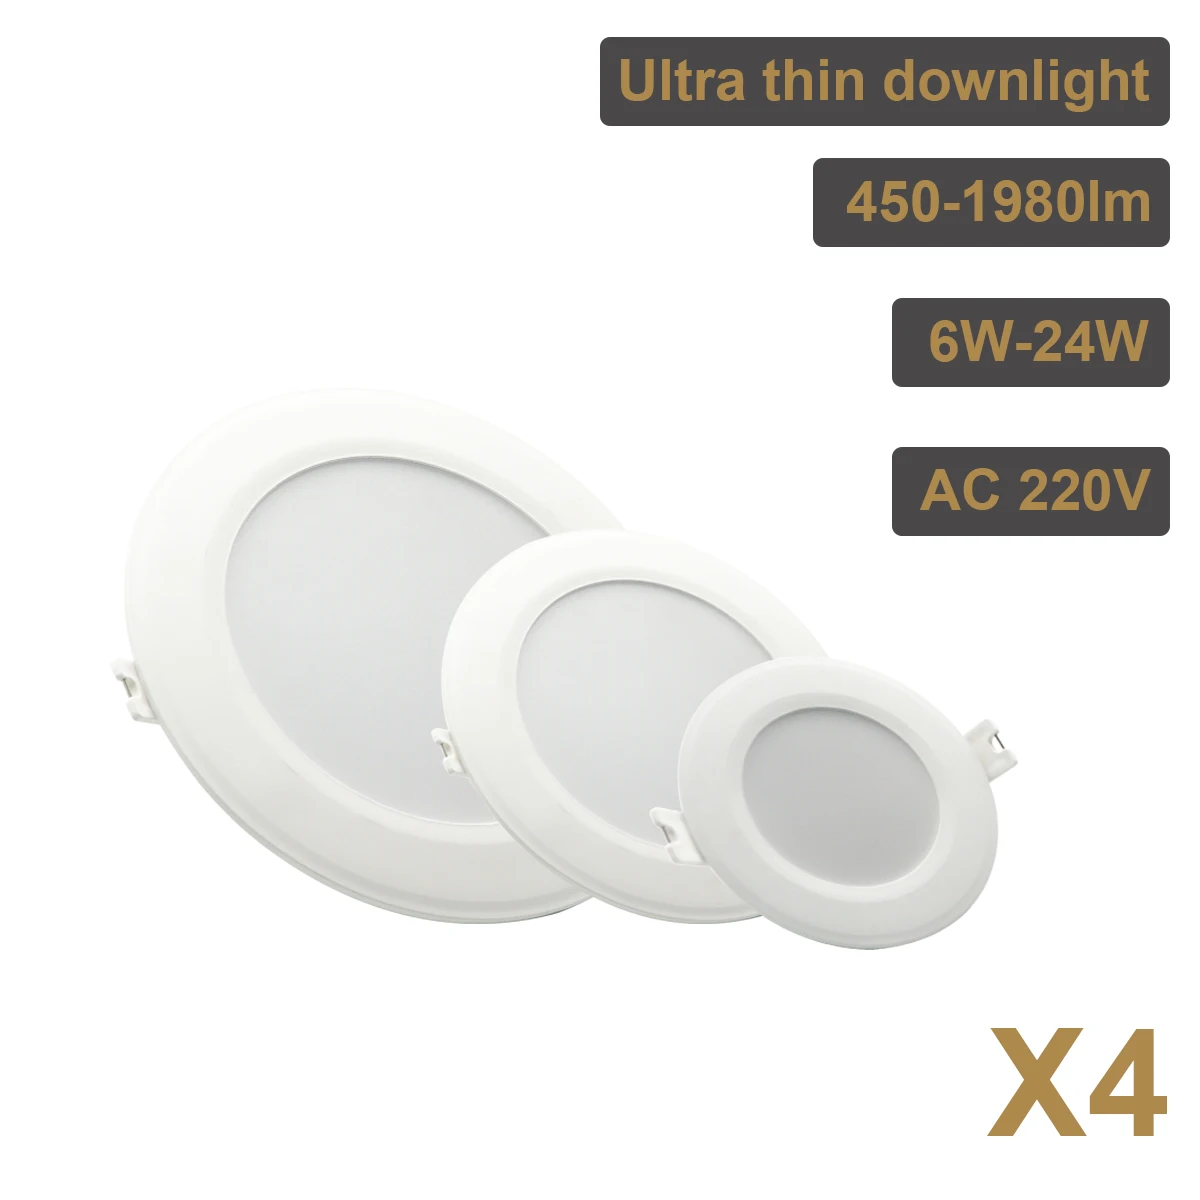 4PCS LED Downlight White Ceiling 6W 10W 14W 17W 20W 24W AC 220V 230V 240V led downlight Cold Warm white led light for Bedroom